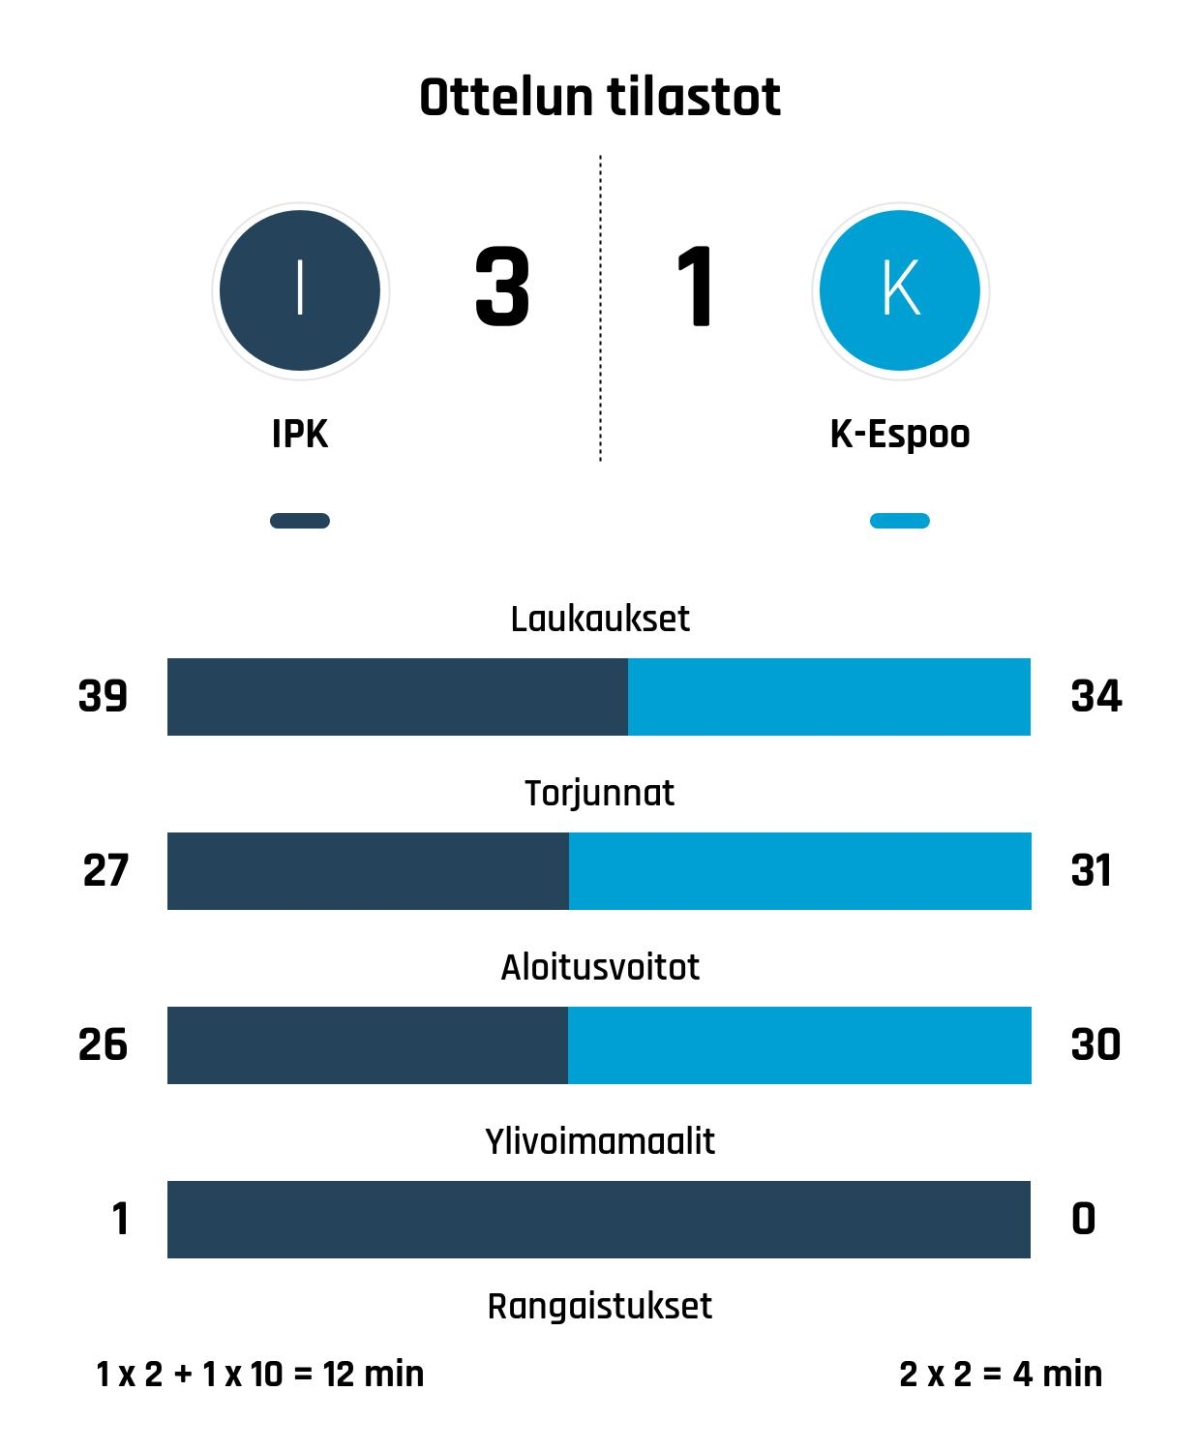 IPK nousi tappioasemasta voittoon K-Espoota vastaan